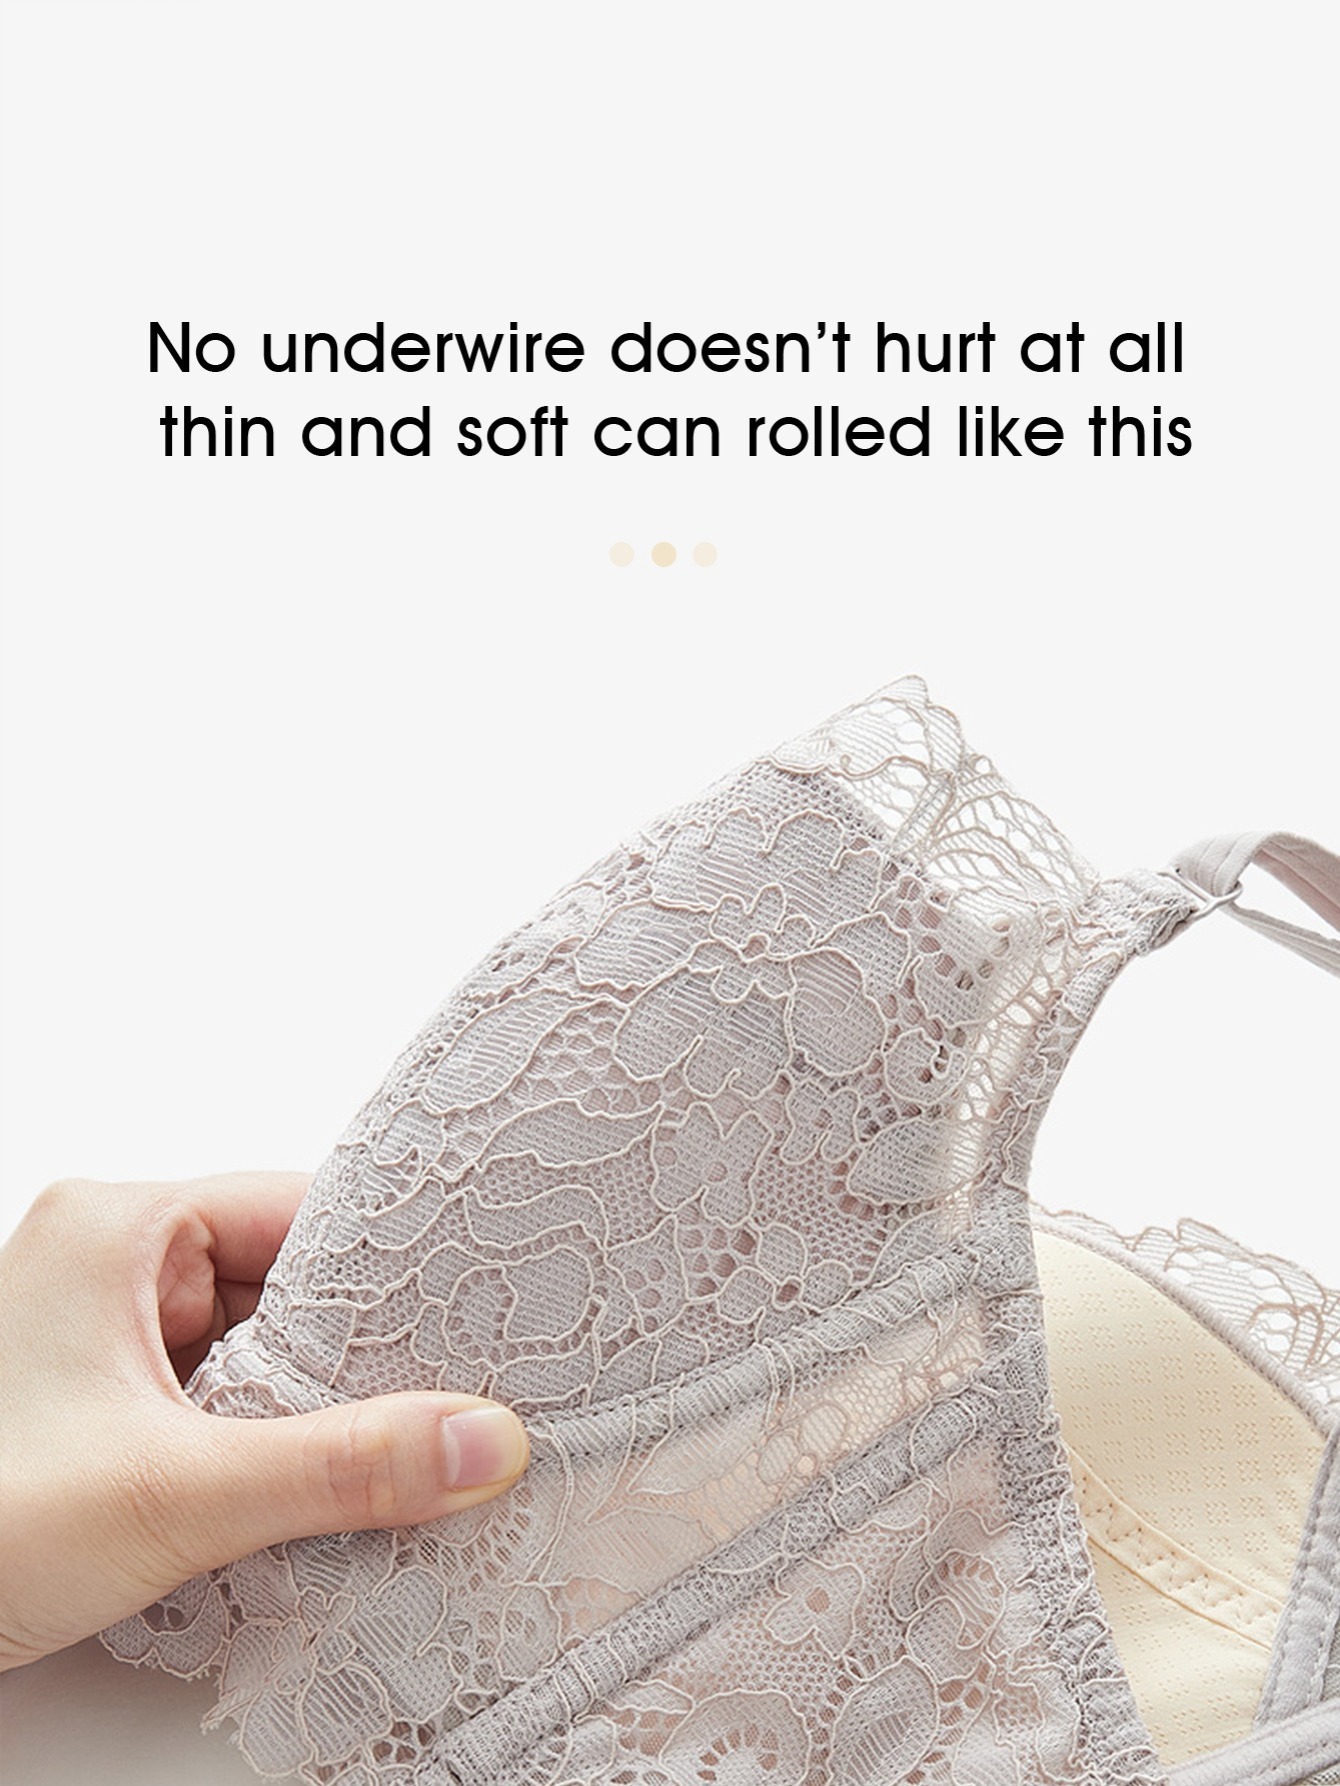 ZHAWEIYC Womens Sexy Lace Bra Push up Anti Sagging Adjustable Bralettes  Thin Floral Brassiere Underwear